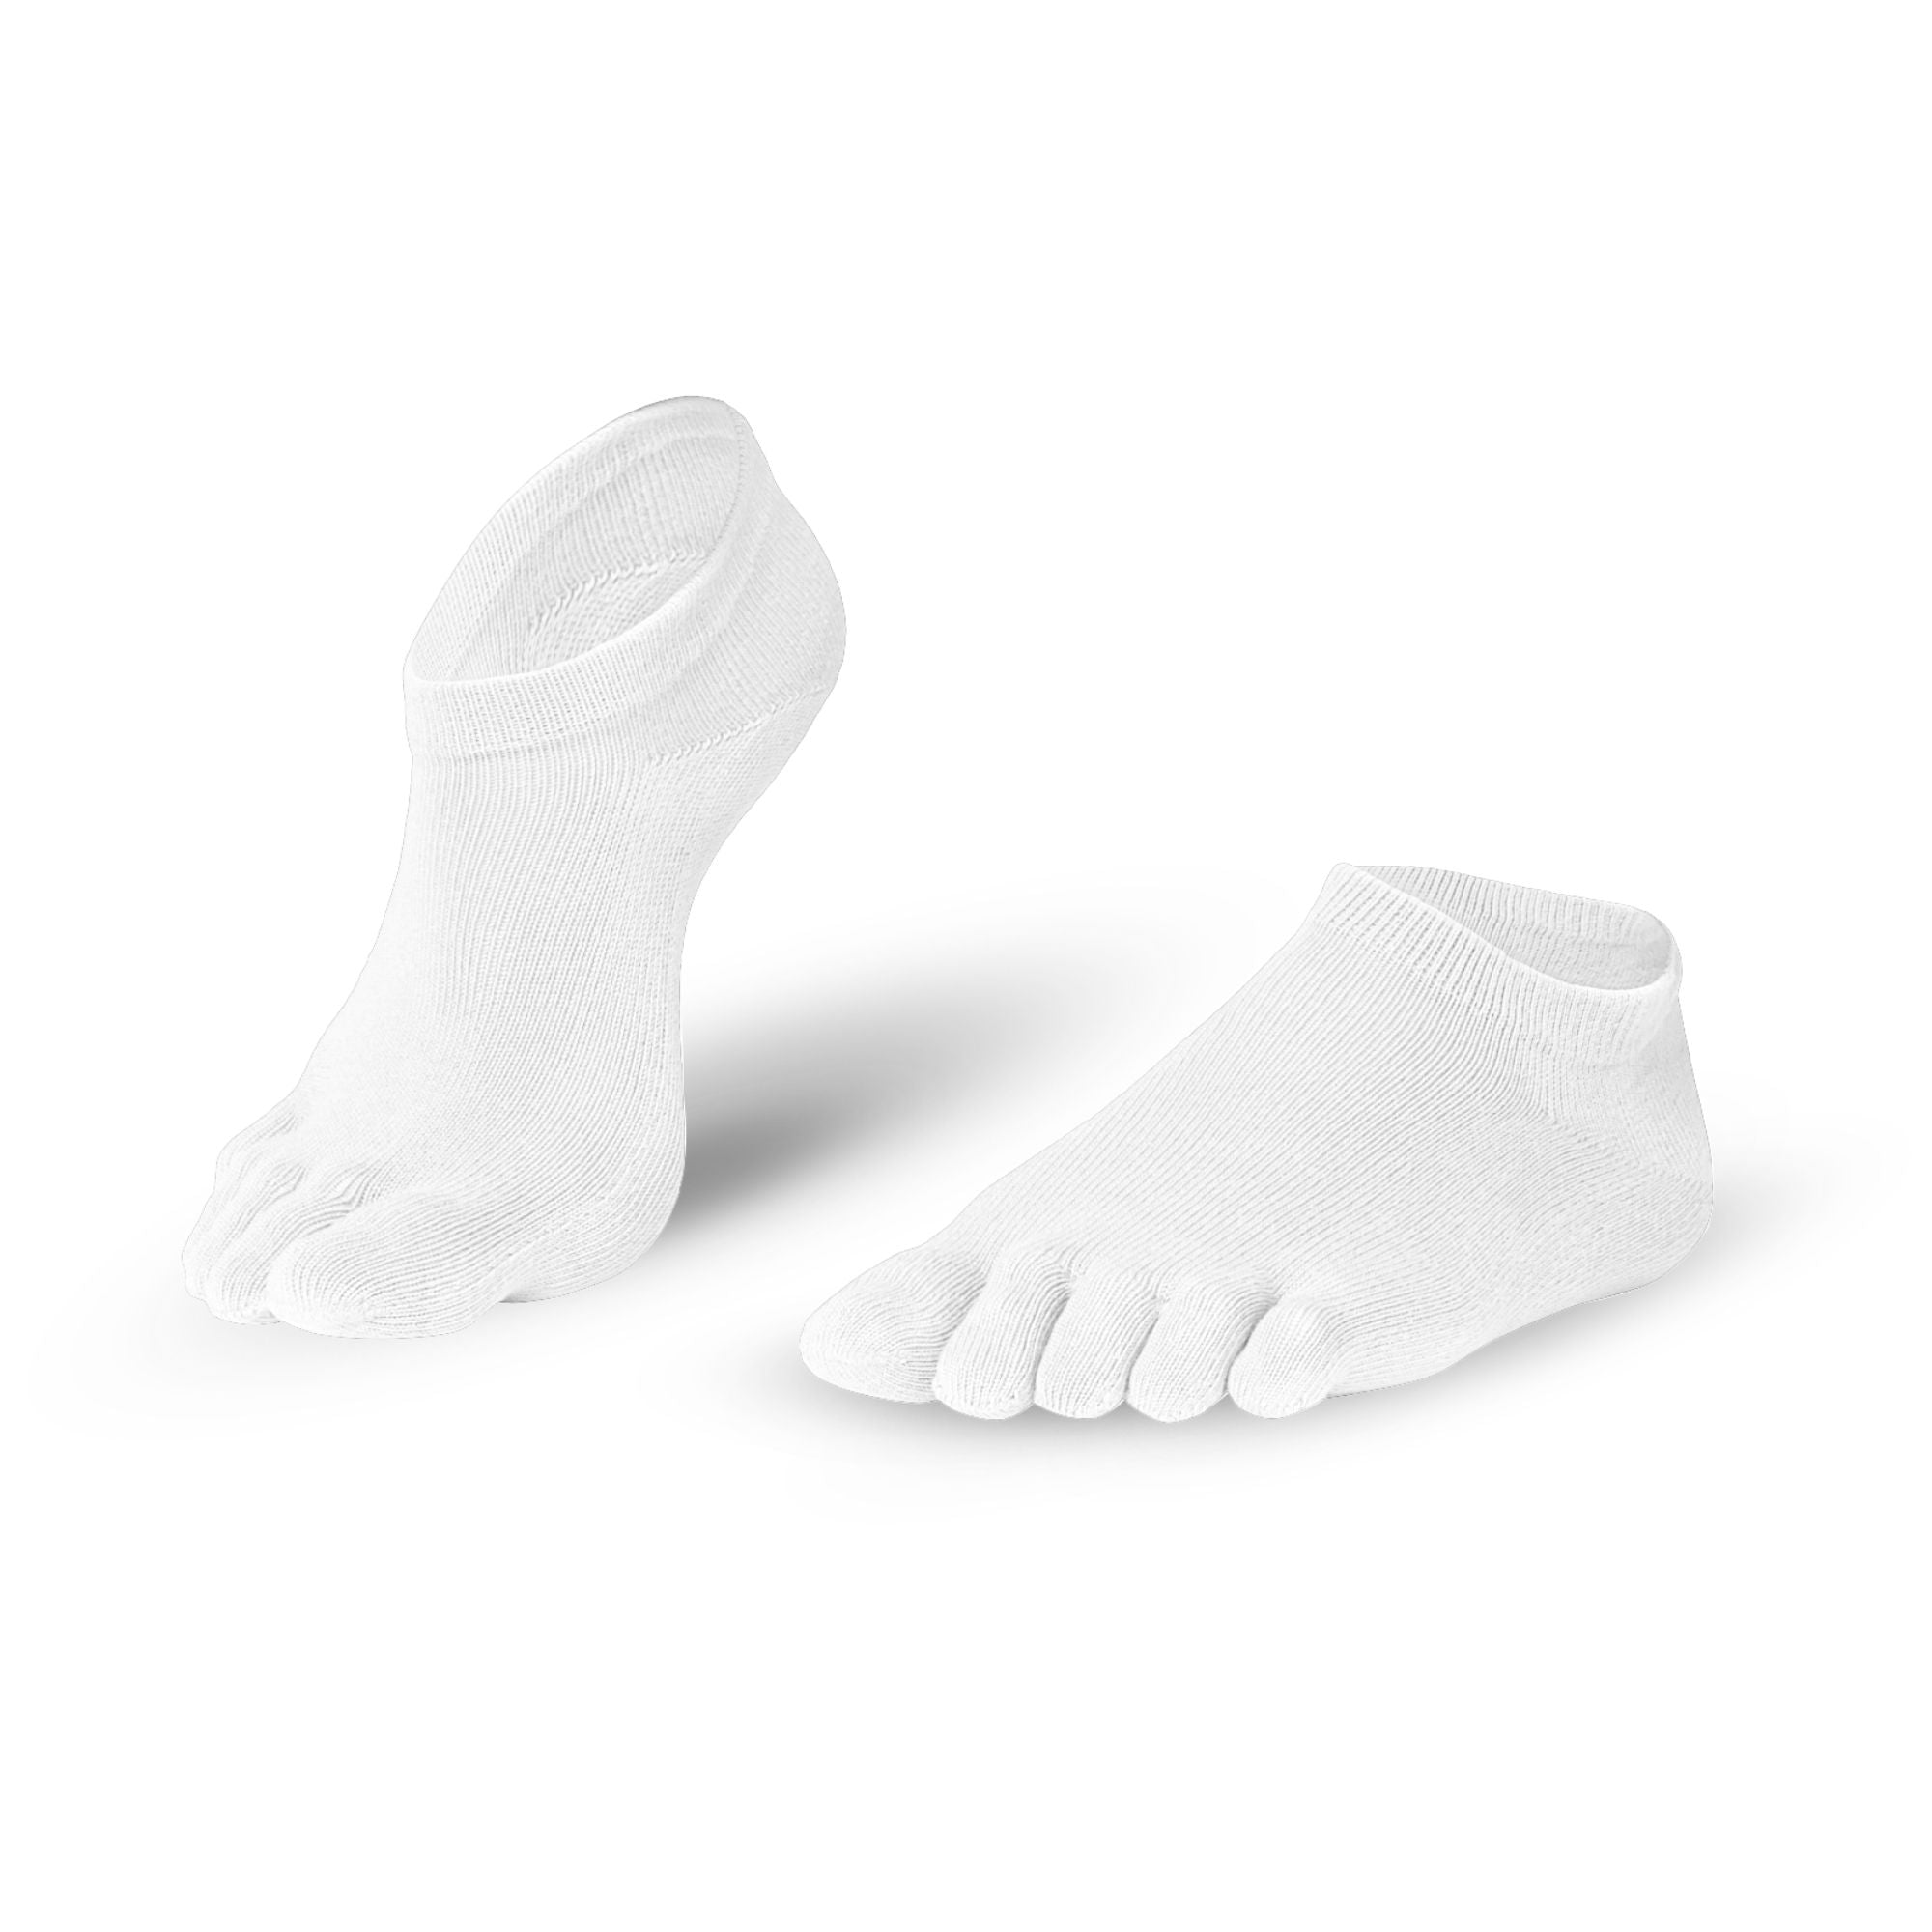 Knitido Essentials Sneaker barfods tåsokker til kvinder og mænd i farven white, par